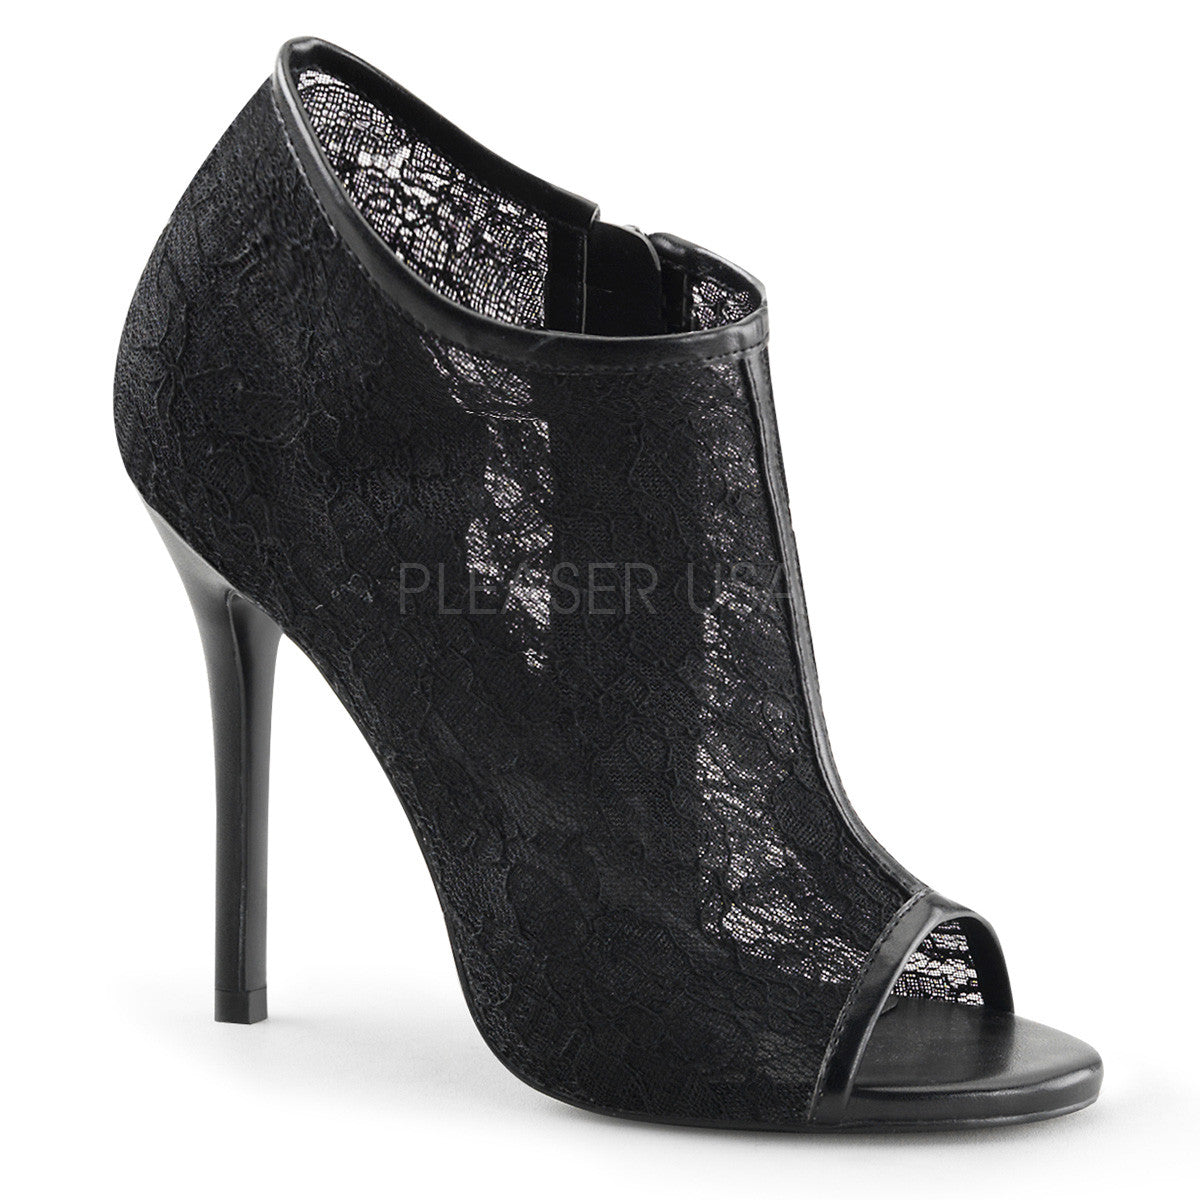 FABULICIOUS AMUSE-56 Black Lace-Mesh Ankle Boots - Shoecup.com - 1